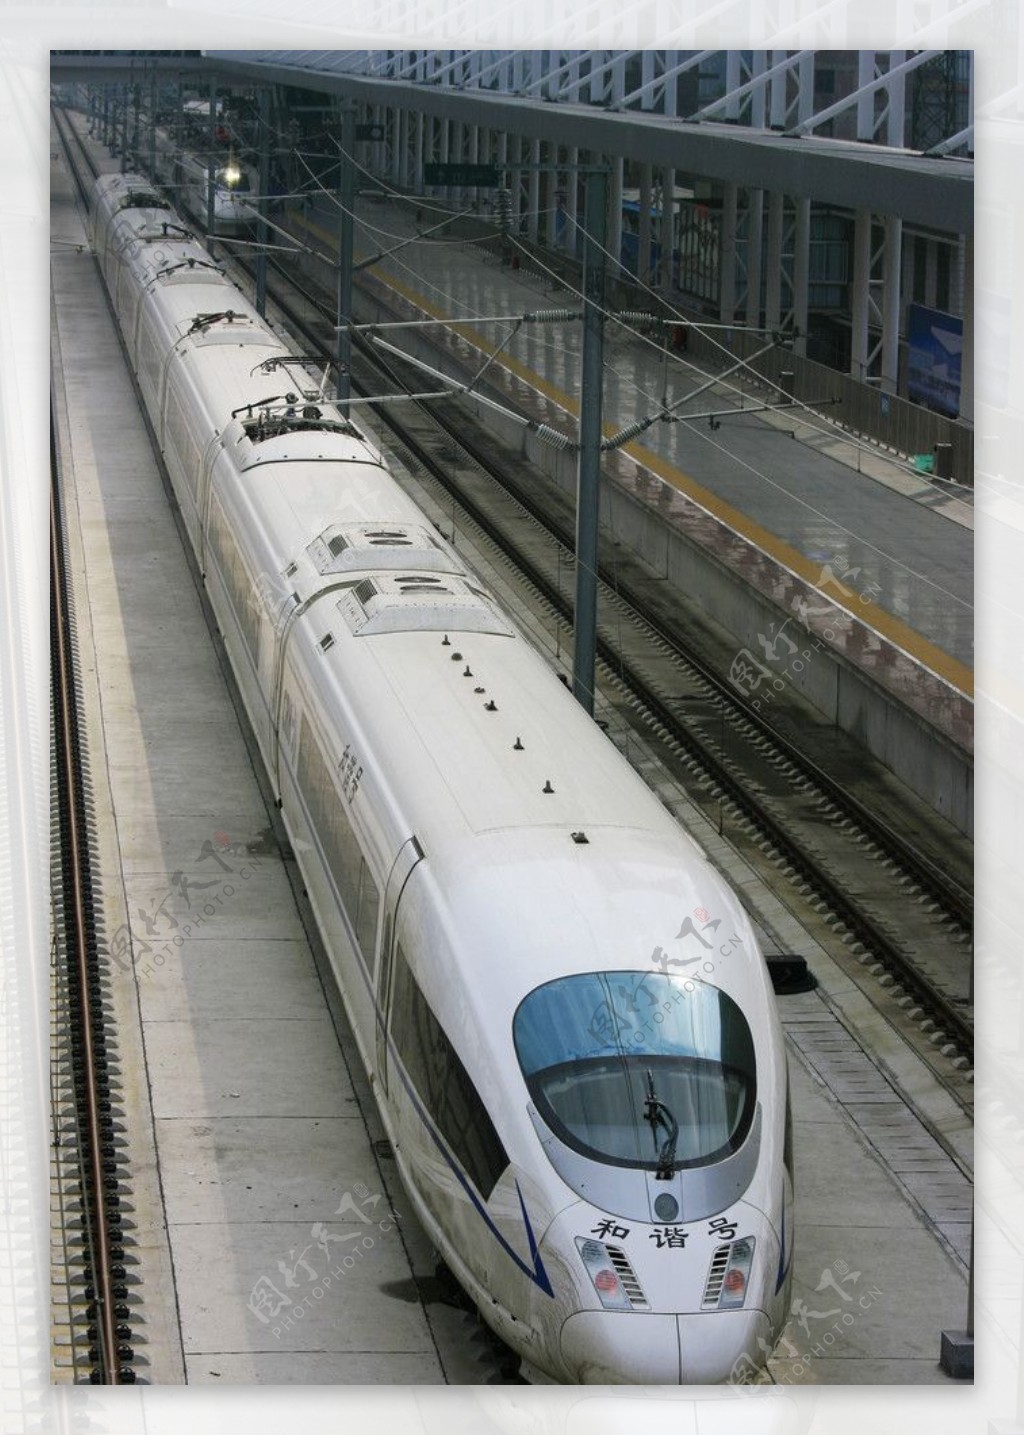 德国进口的ICE列车国内命名为CRH3图片